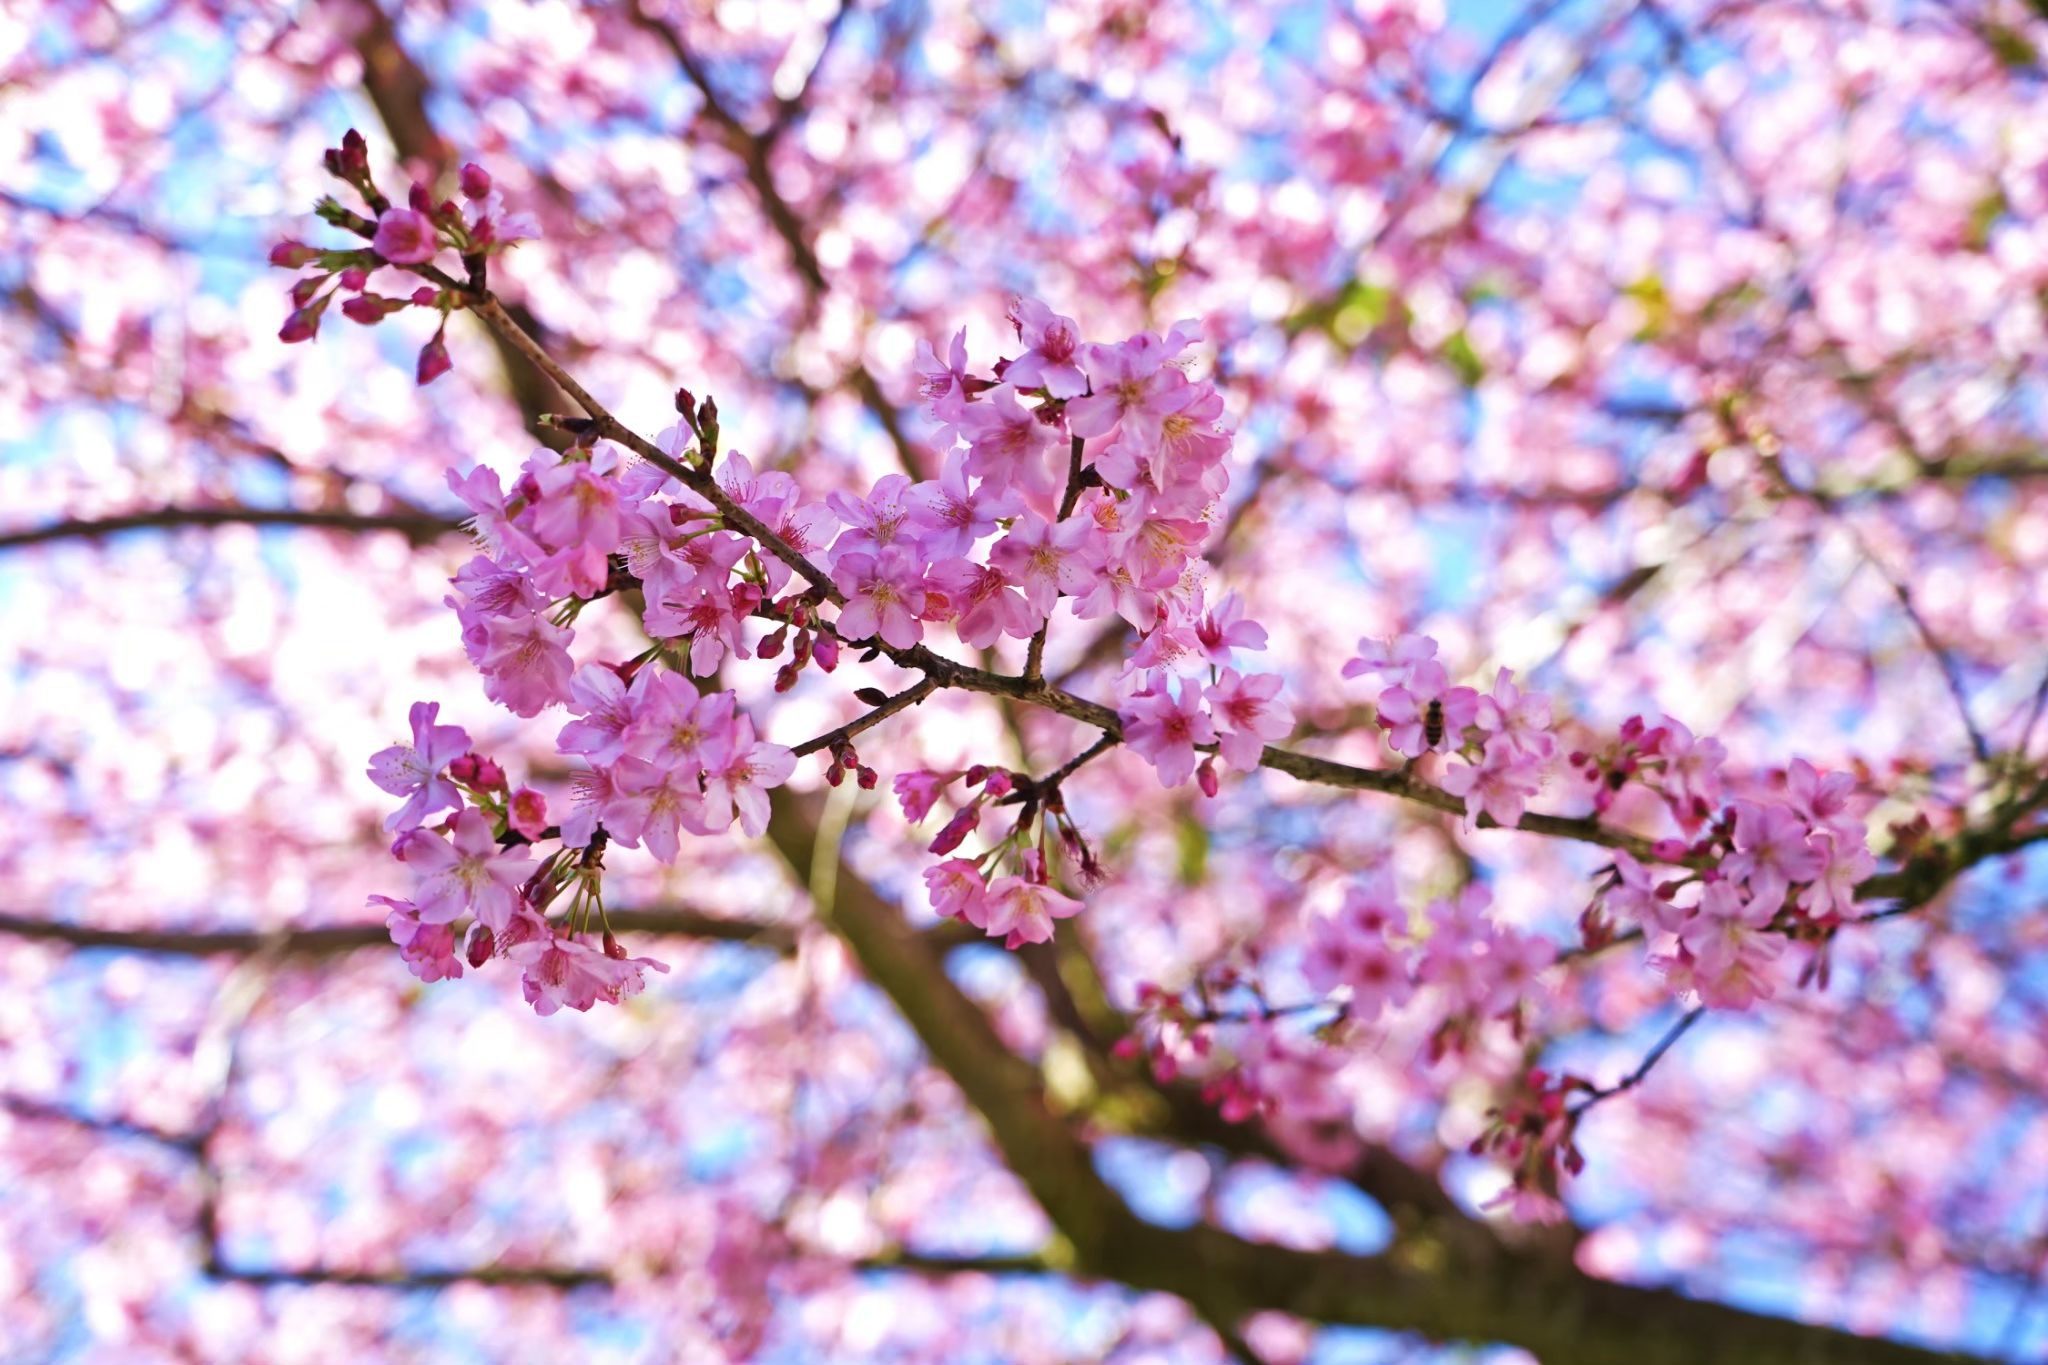 紫藤花、櫻花、山茶花接力綻放  到嘉義縣賞花正是時候